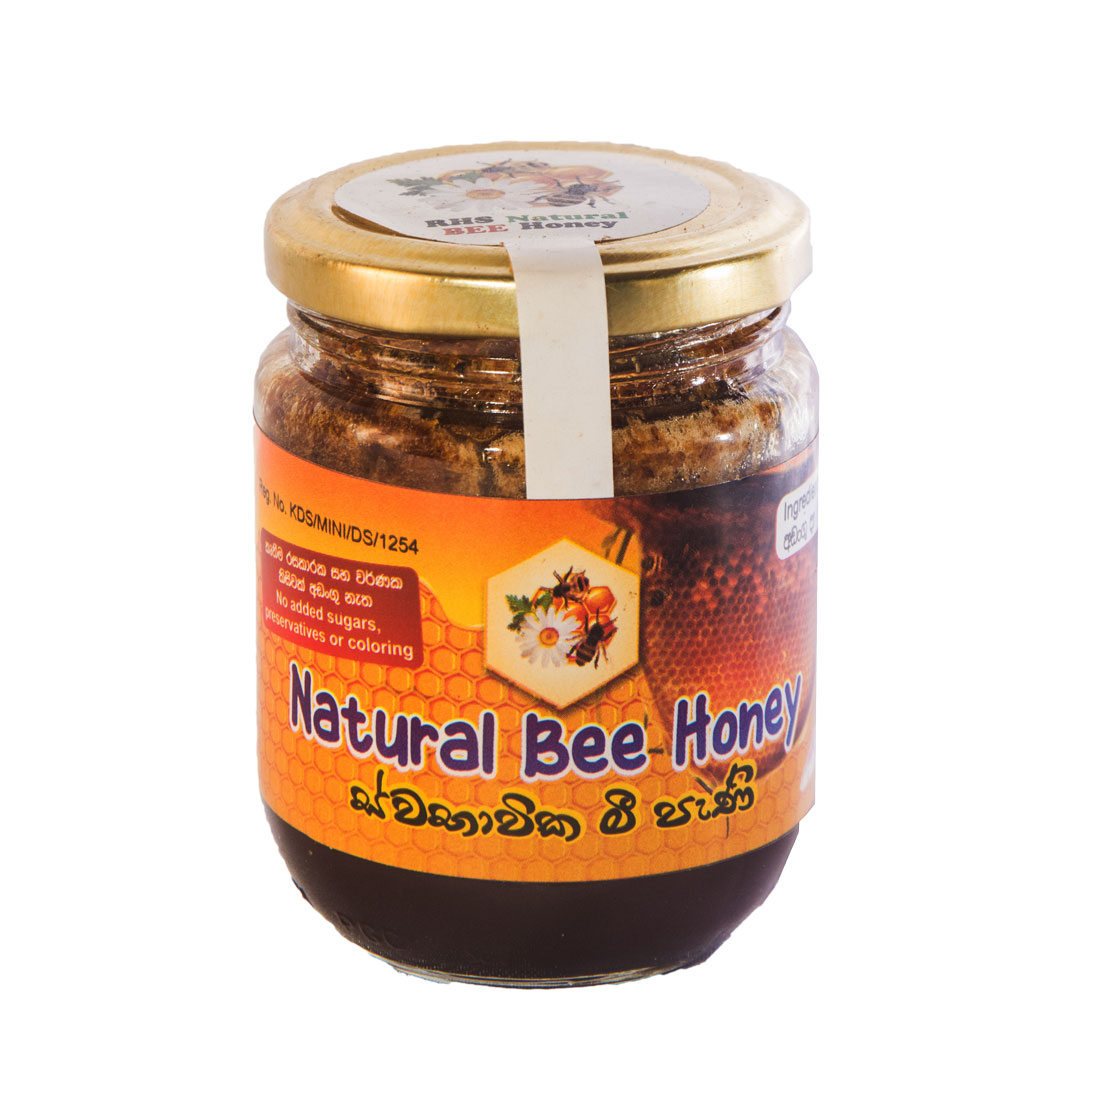 Natural bee honey2